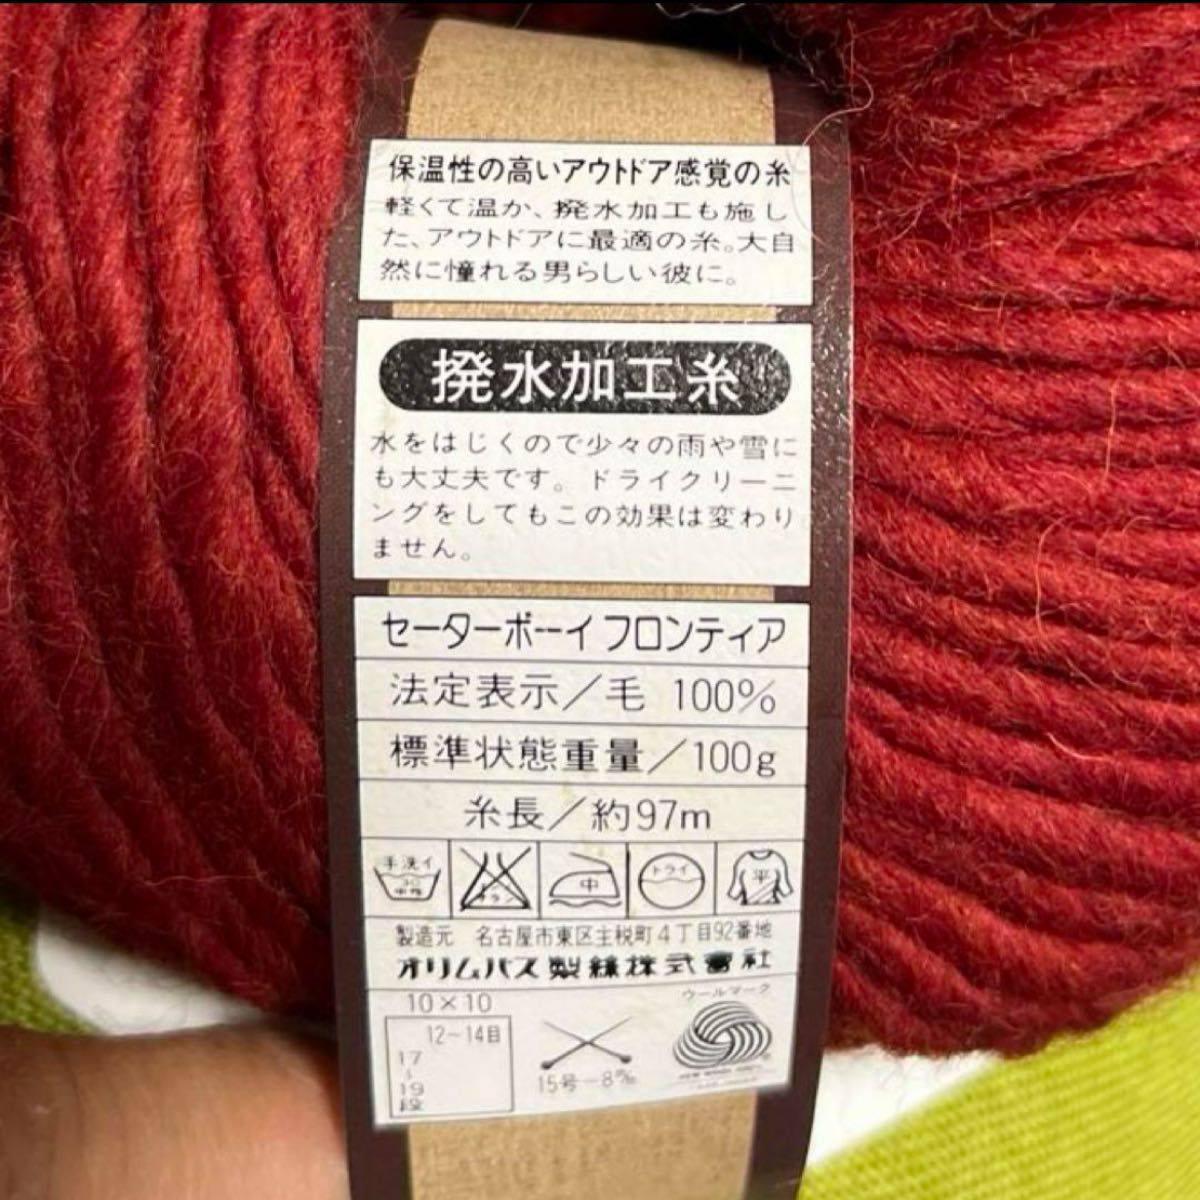 【最終価格】訳あり wool100%撥水加工毛糸×6玉と